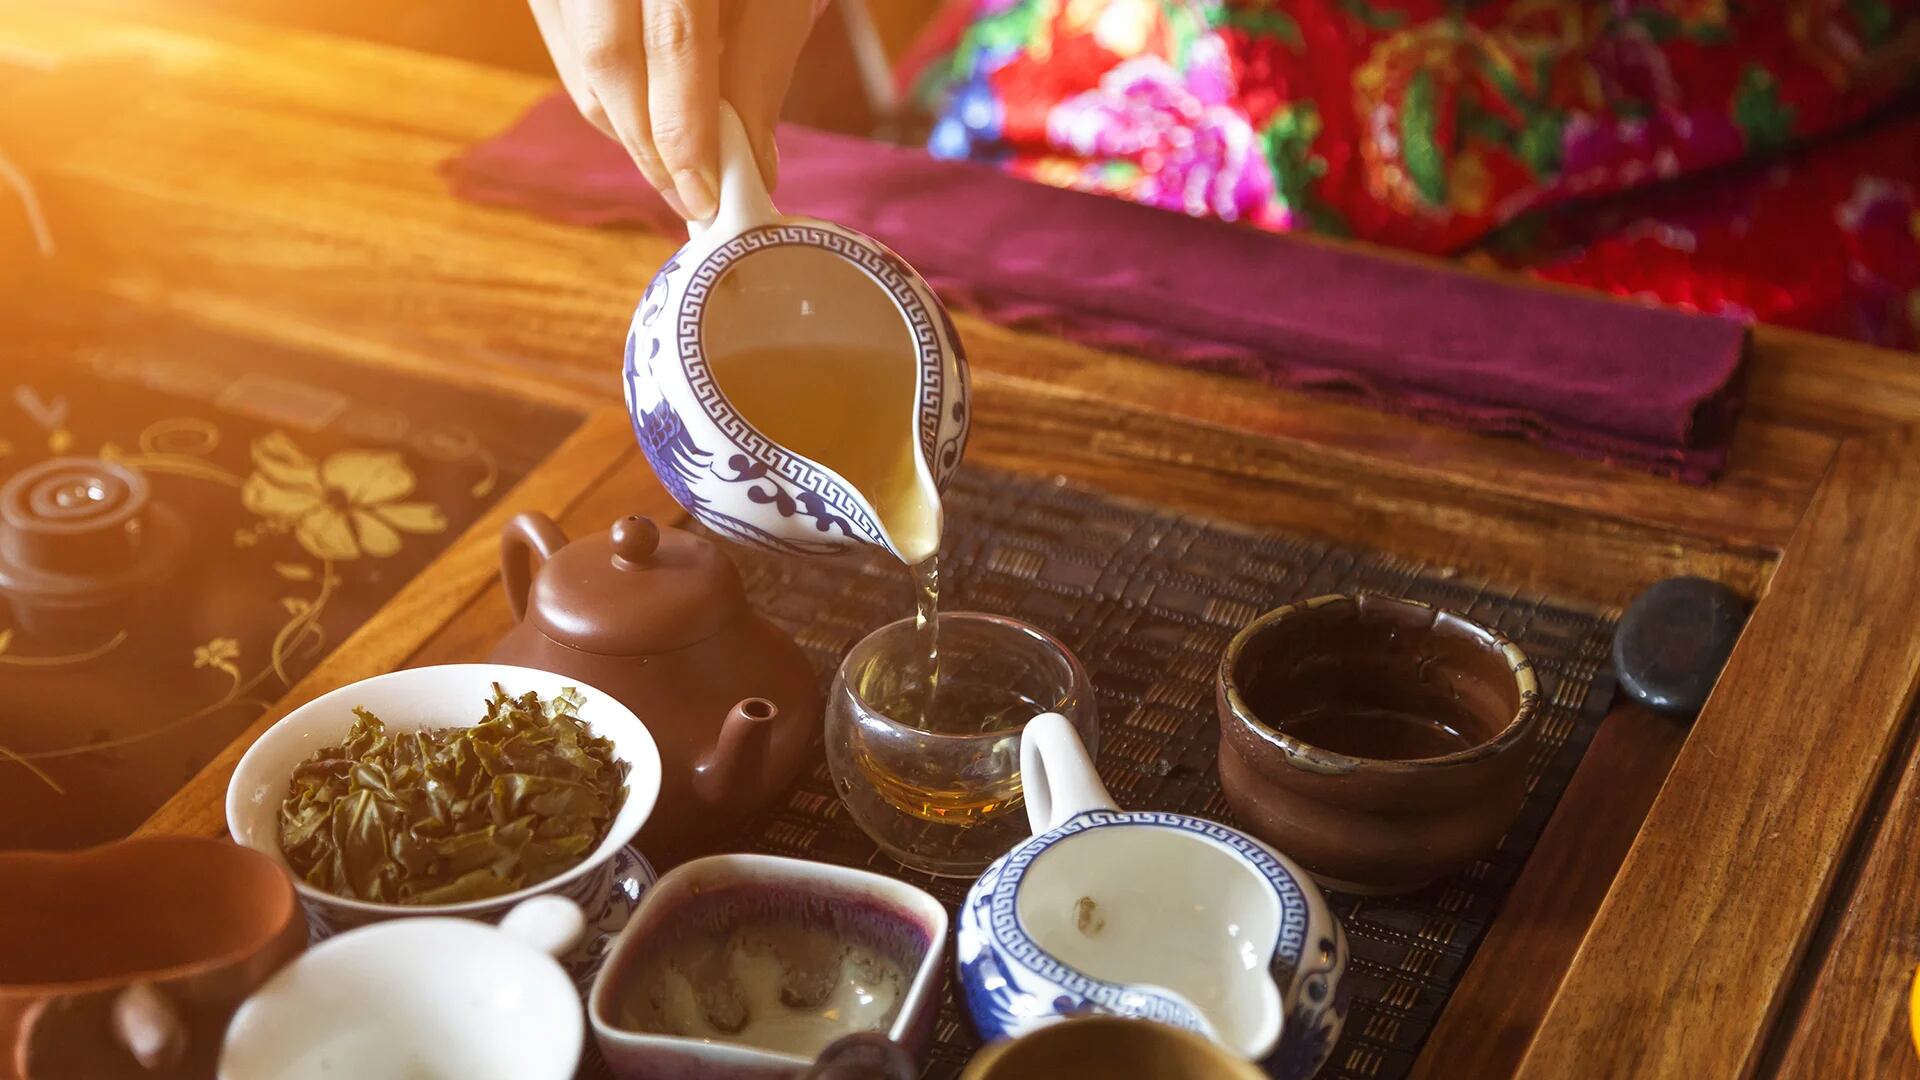 Delicada tetera y tazas de té de porcelana para la celebración del año  nuevo ia generativa del año nuevo chino